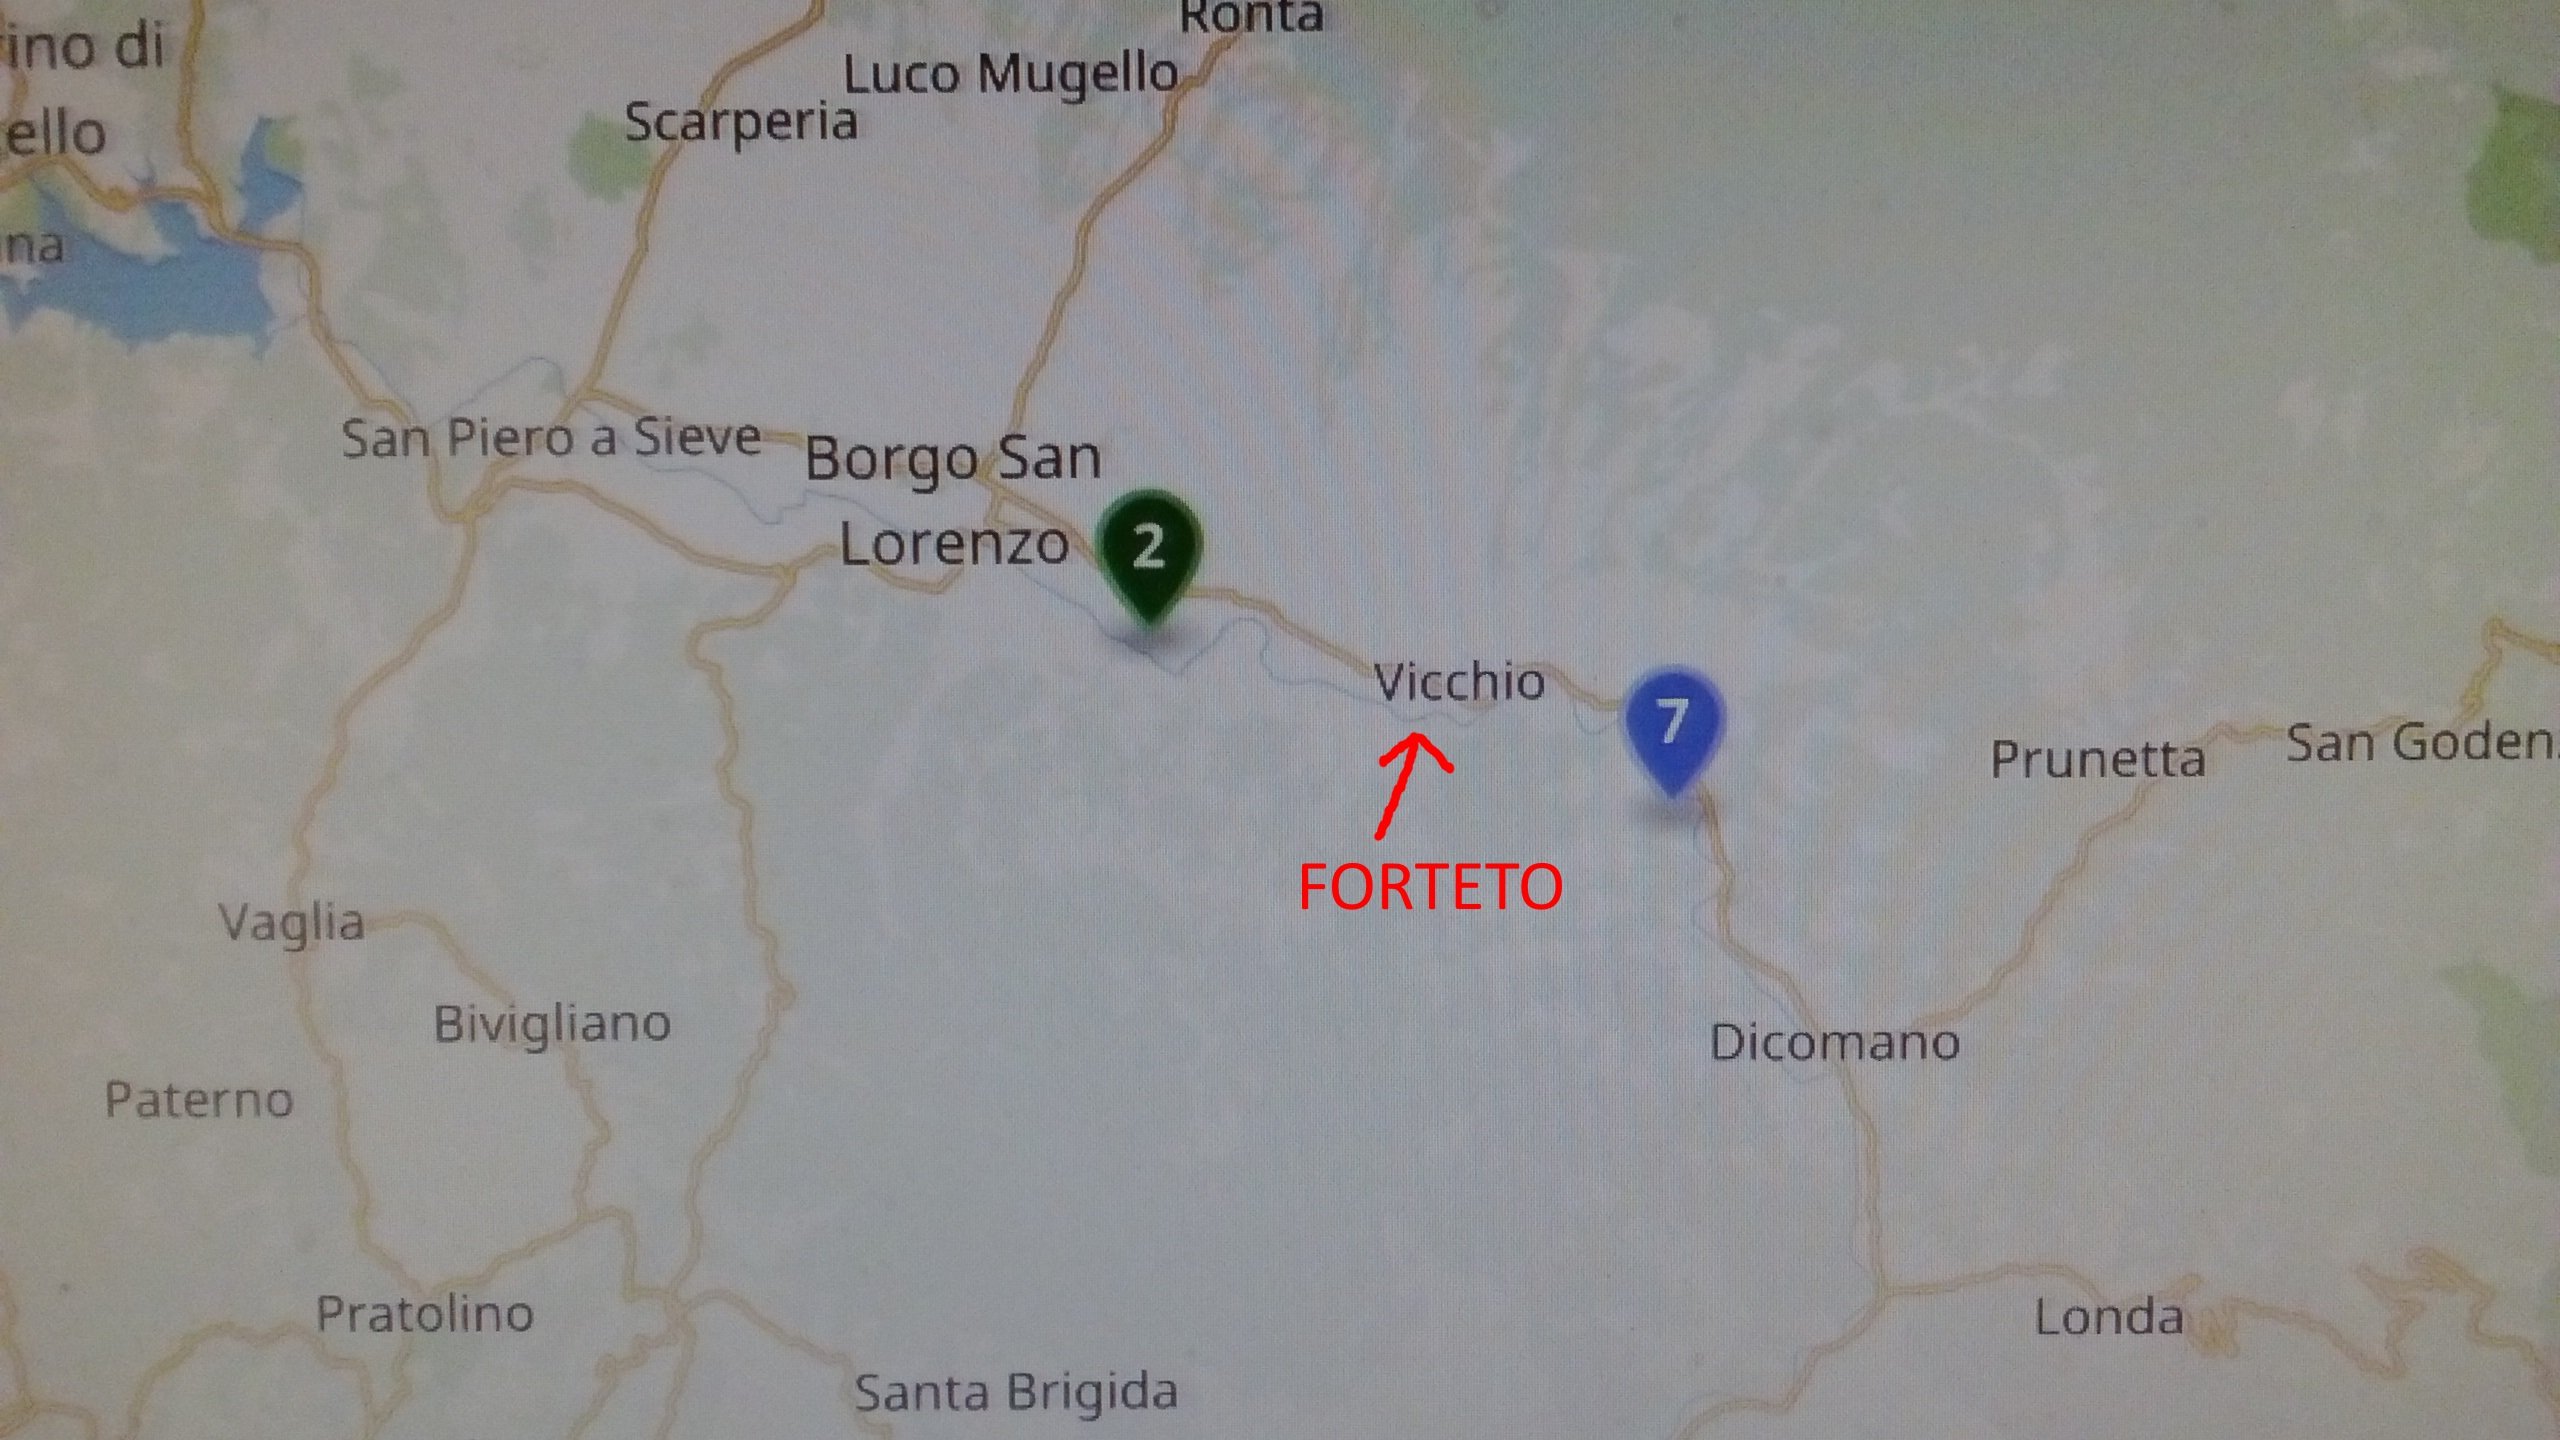 Wikileaks Italian 🇮🇹 on Twitter: "#Forteto è a Vicchio e si trova tra il  delitto n. 2 e 7 del mostro di Firenze #PedoGate https://t.co/CtwVwjuNa1  https://t.co/t7w9zZSiiU" / Twitter